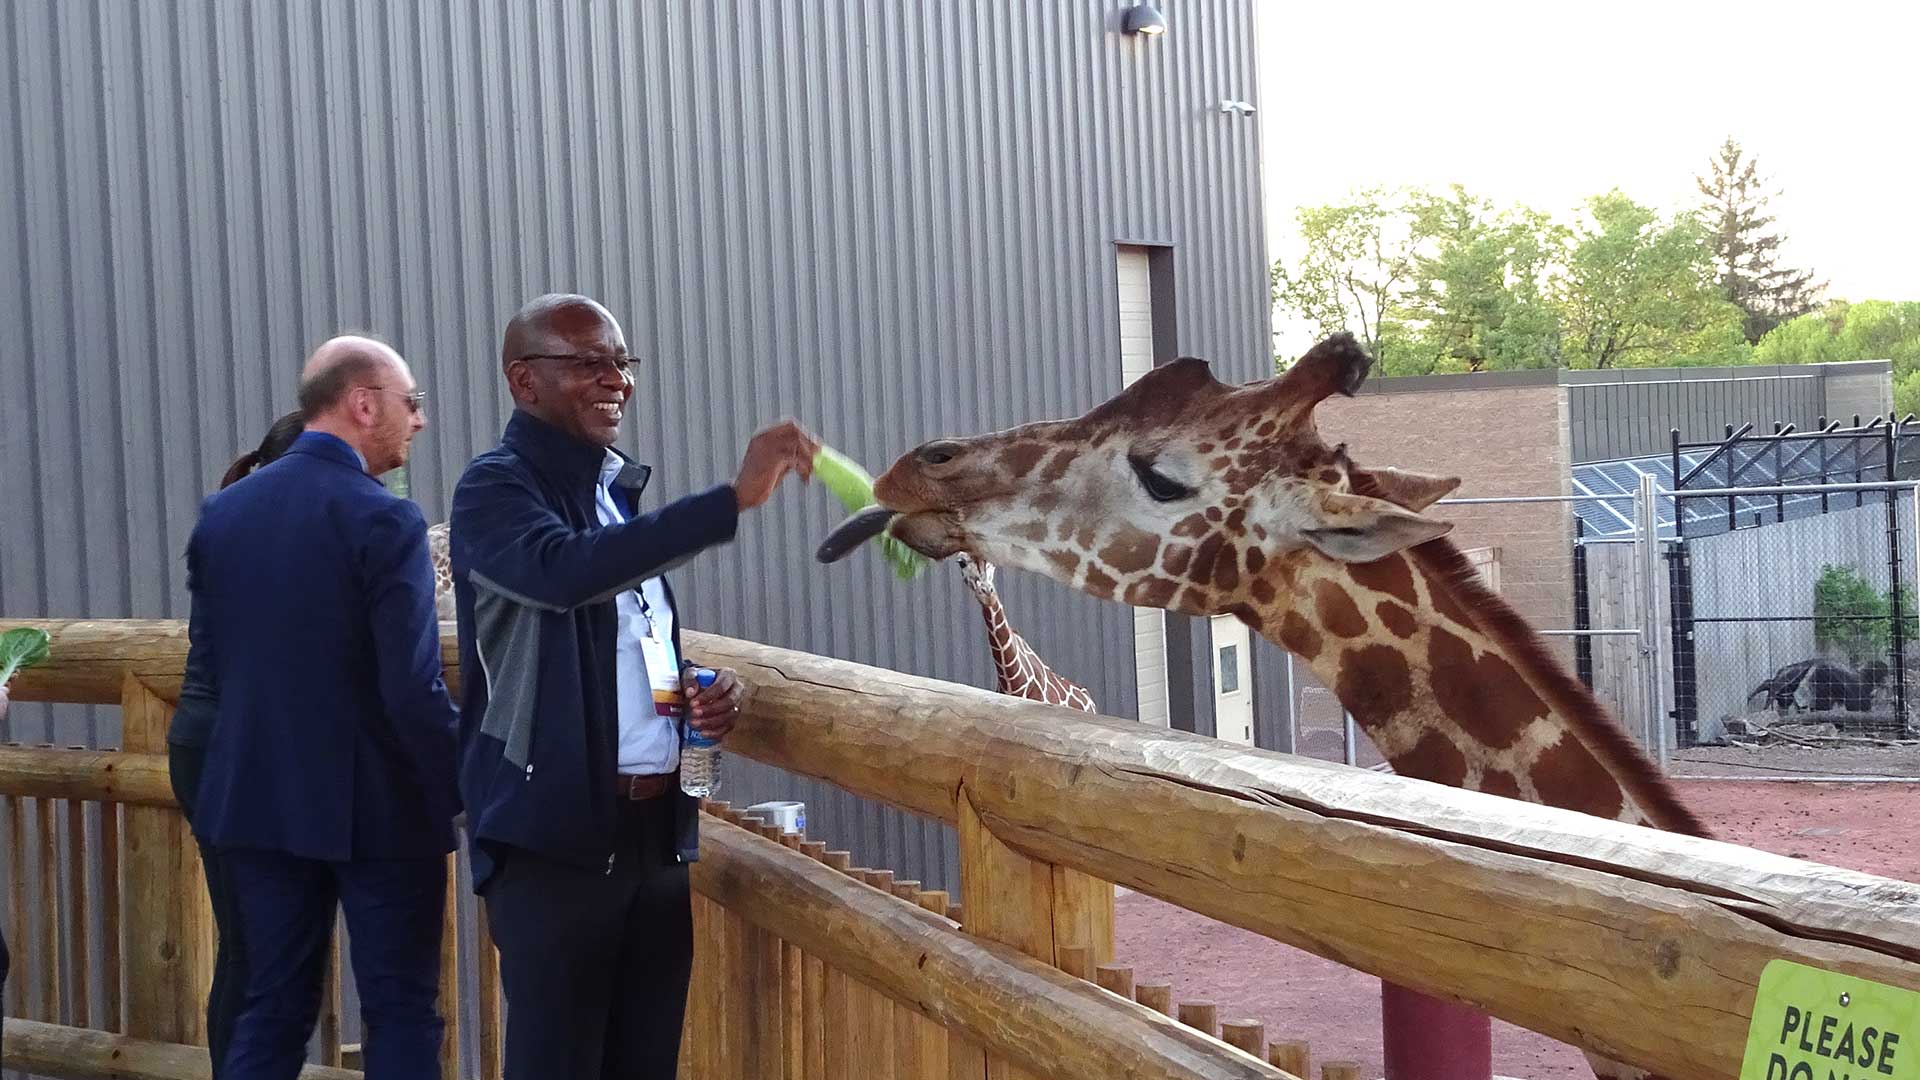 Two people feeding Giraffe